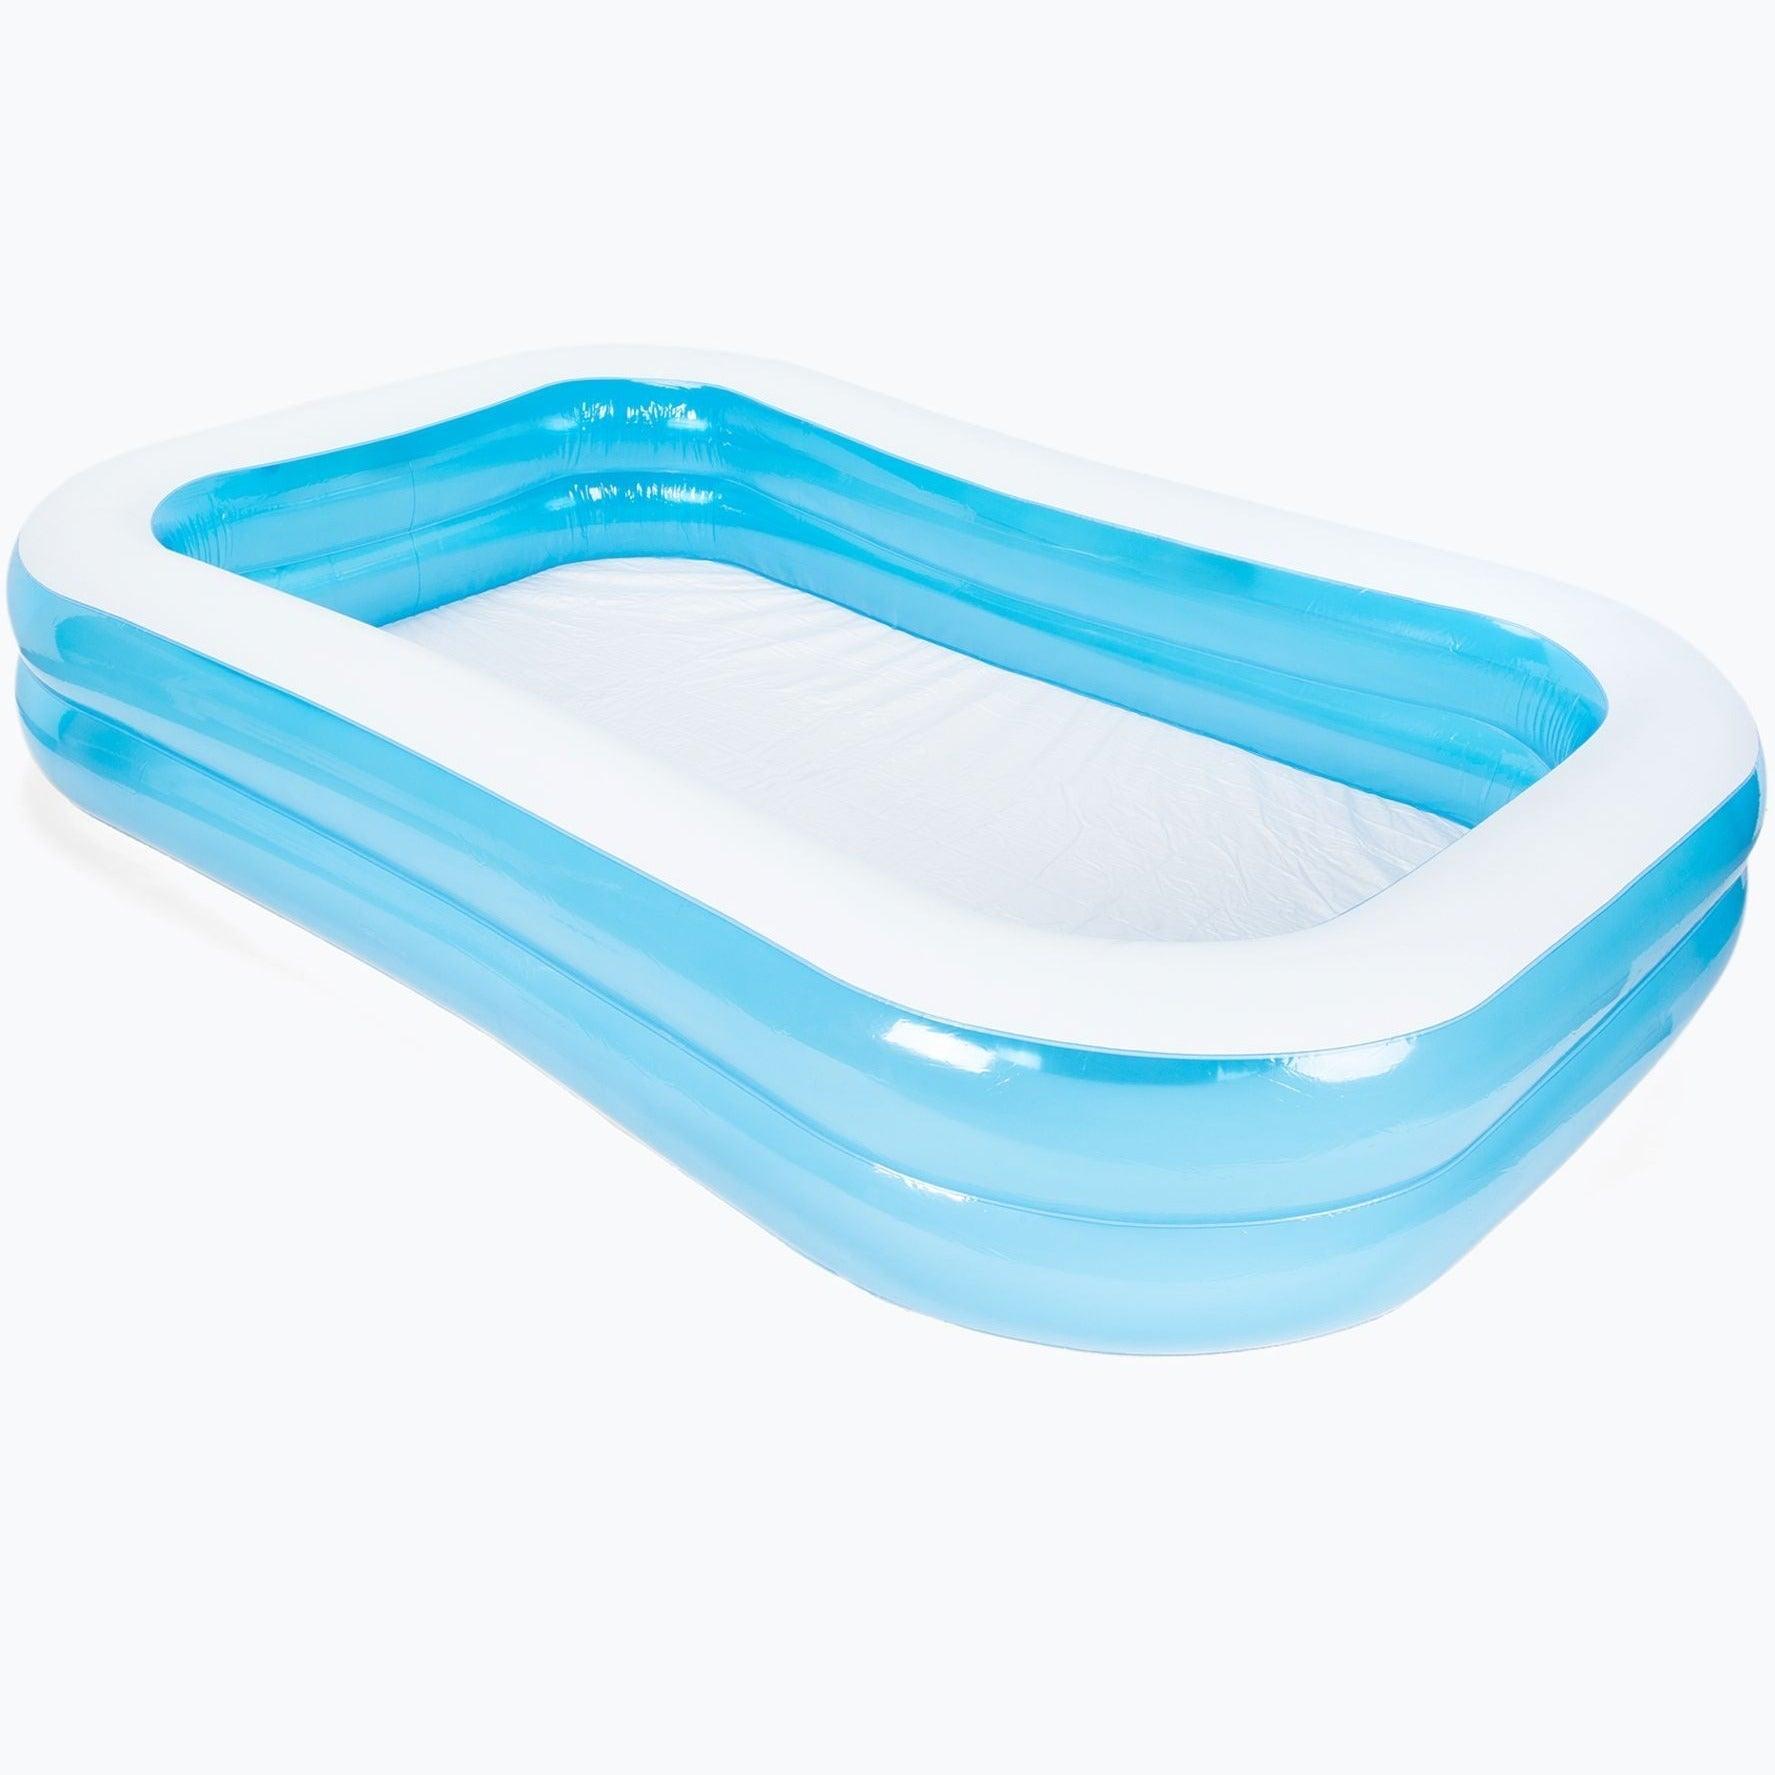 Aquastique: piscine gonflable pour enfants 305 cm